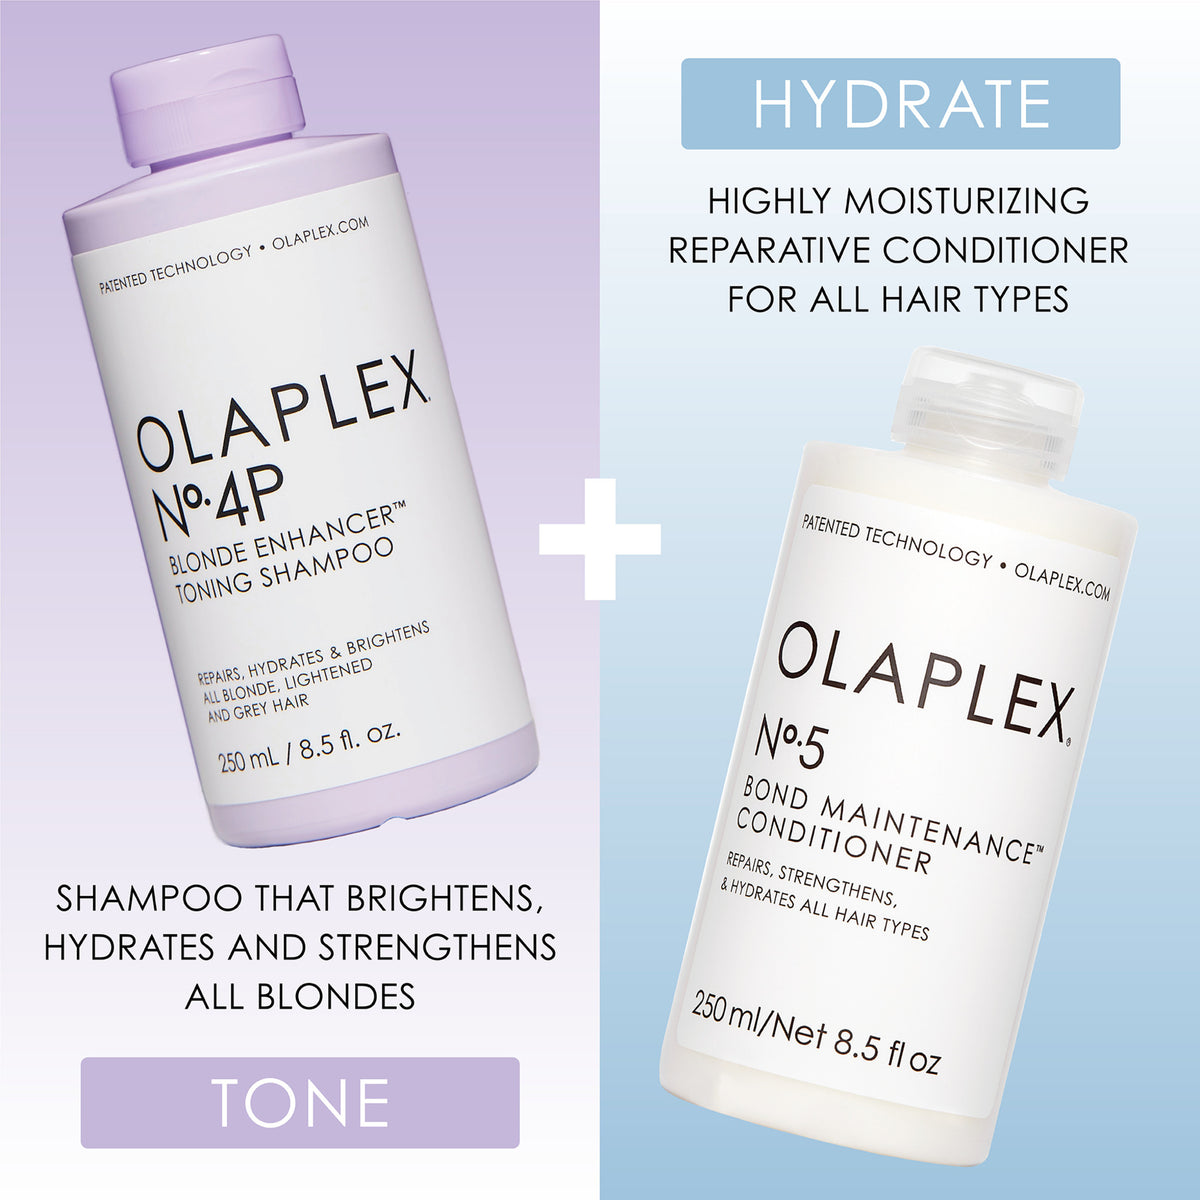 Olaplex No.4P Blonde Enhancer Toning Shampoo .